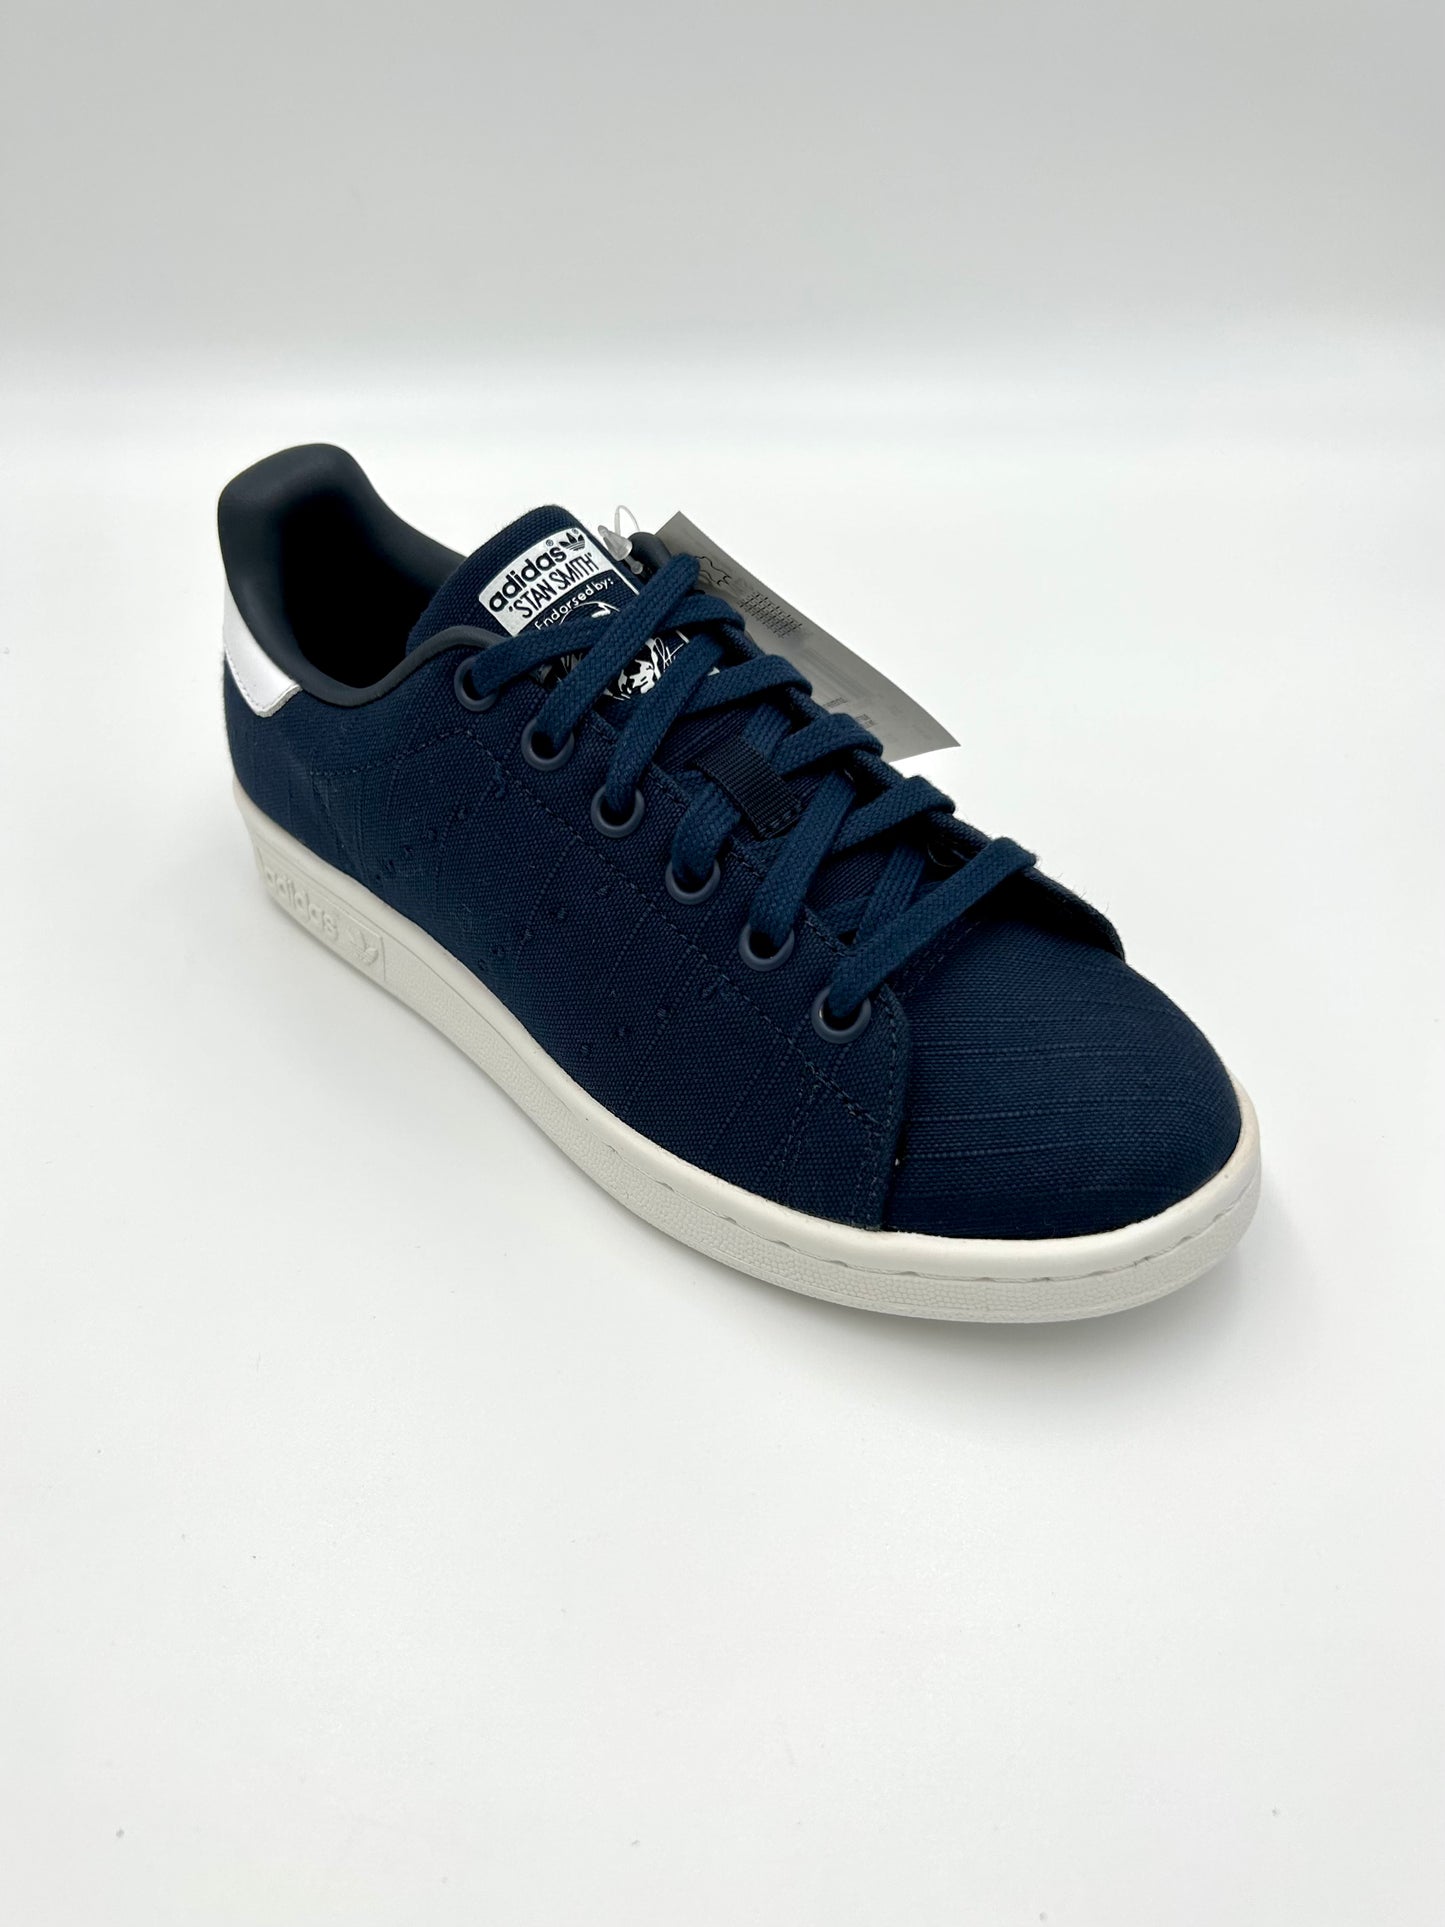 Adidas Stan Smith W S75950 co navy - blu e bianco - Adidas